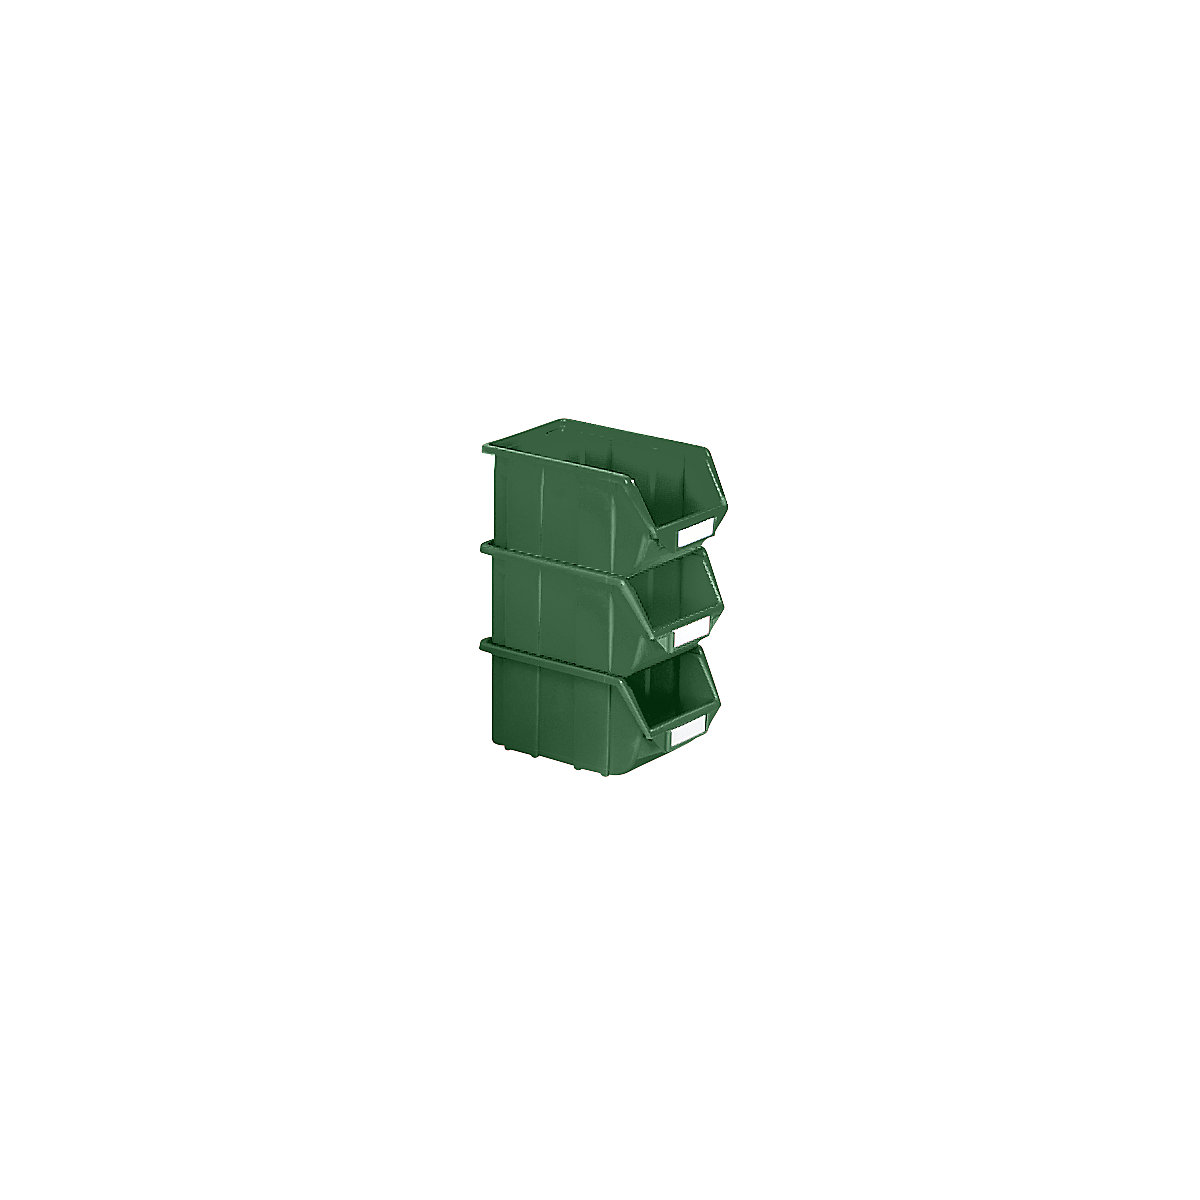 Caixa de armazenagem à vista em polipropileno, CxLxA 125 x 113 x 64 mm, embalagem de 30 unid., verde, embalagem com 30 unid.-7